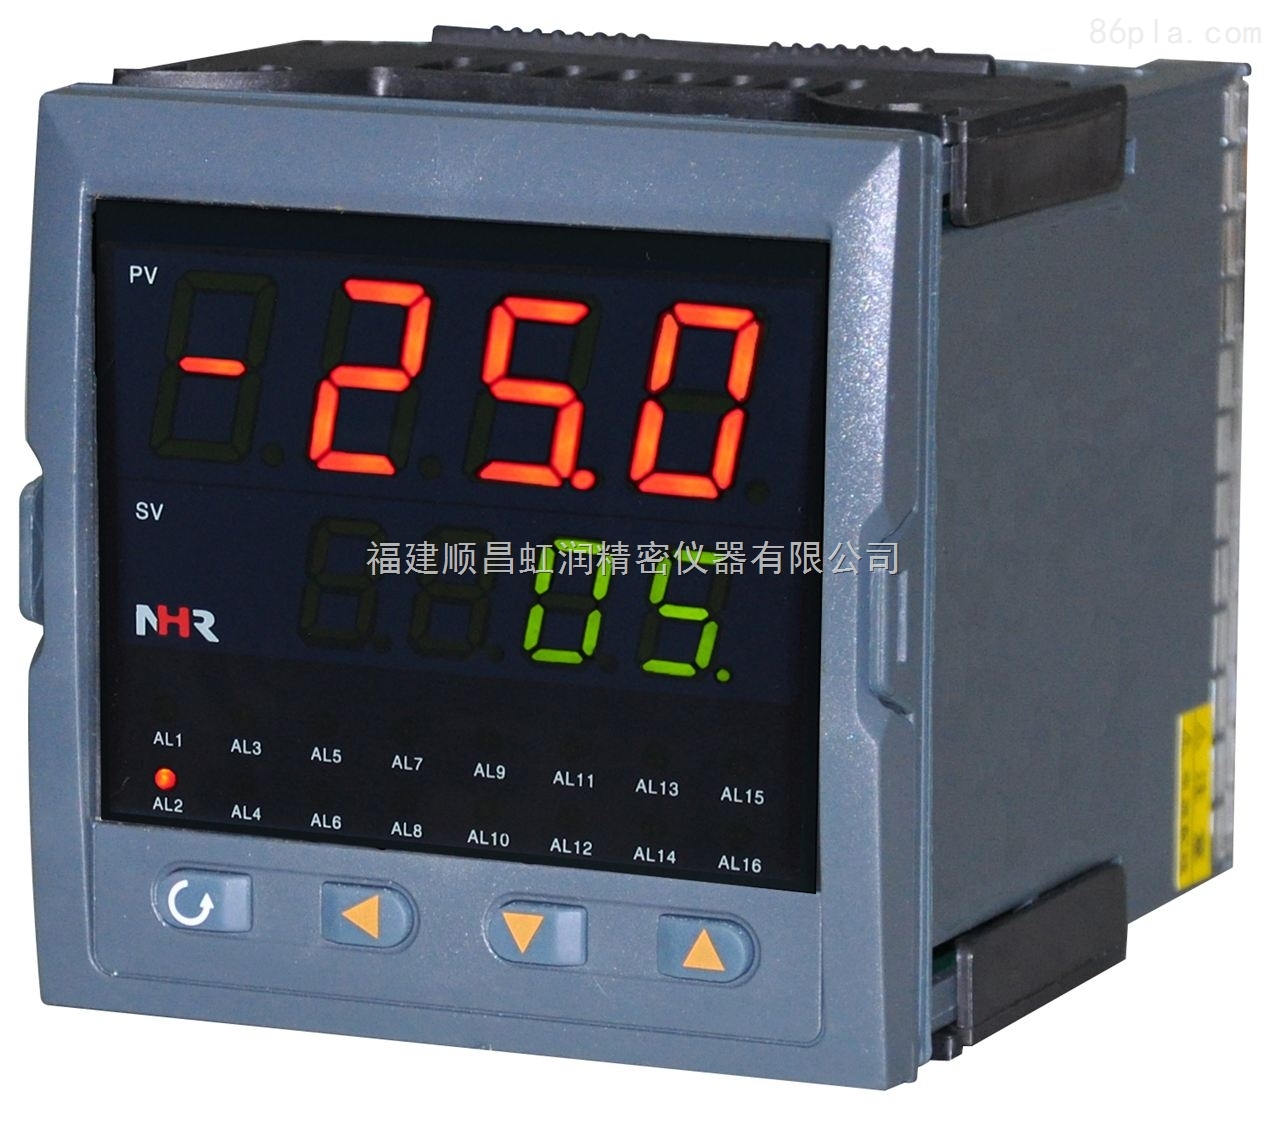 廣州虹潤NHR-5700系列多回路測量顯示控制儀